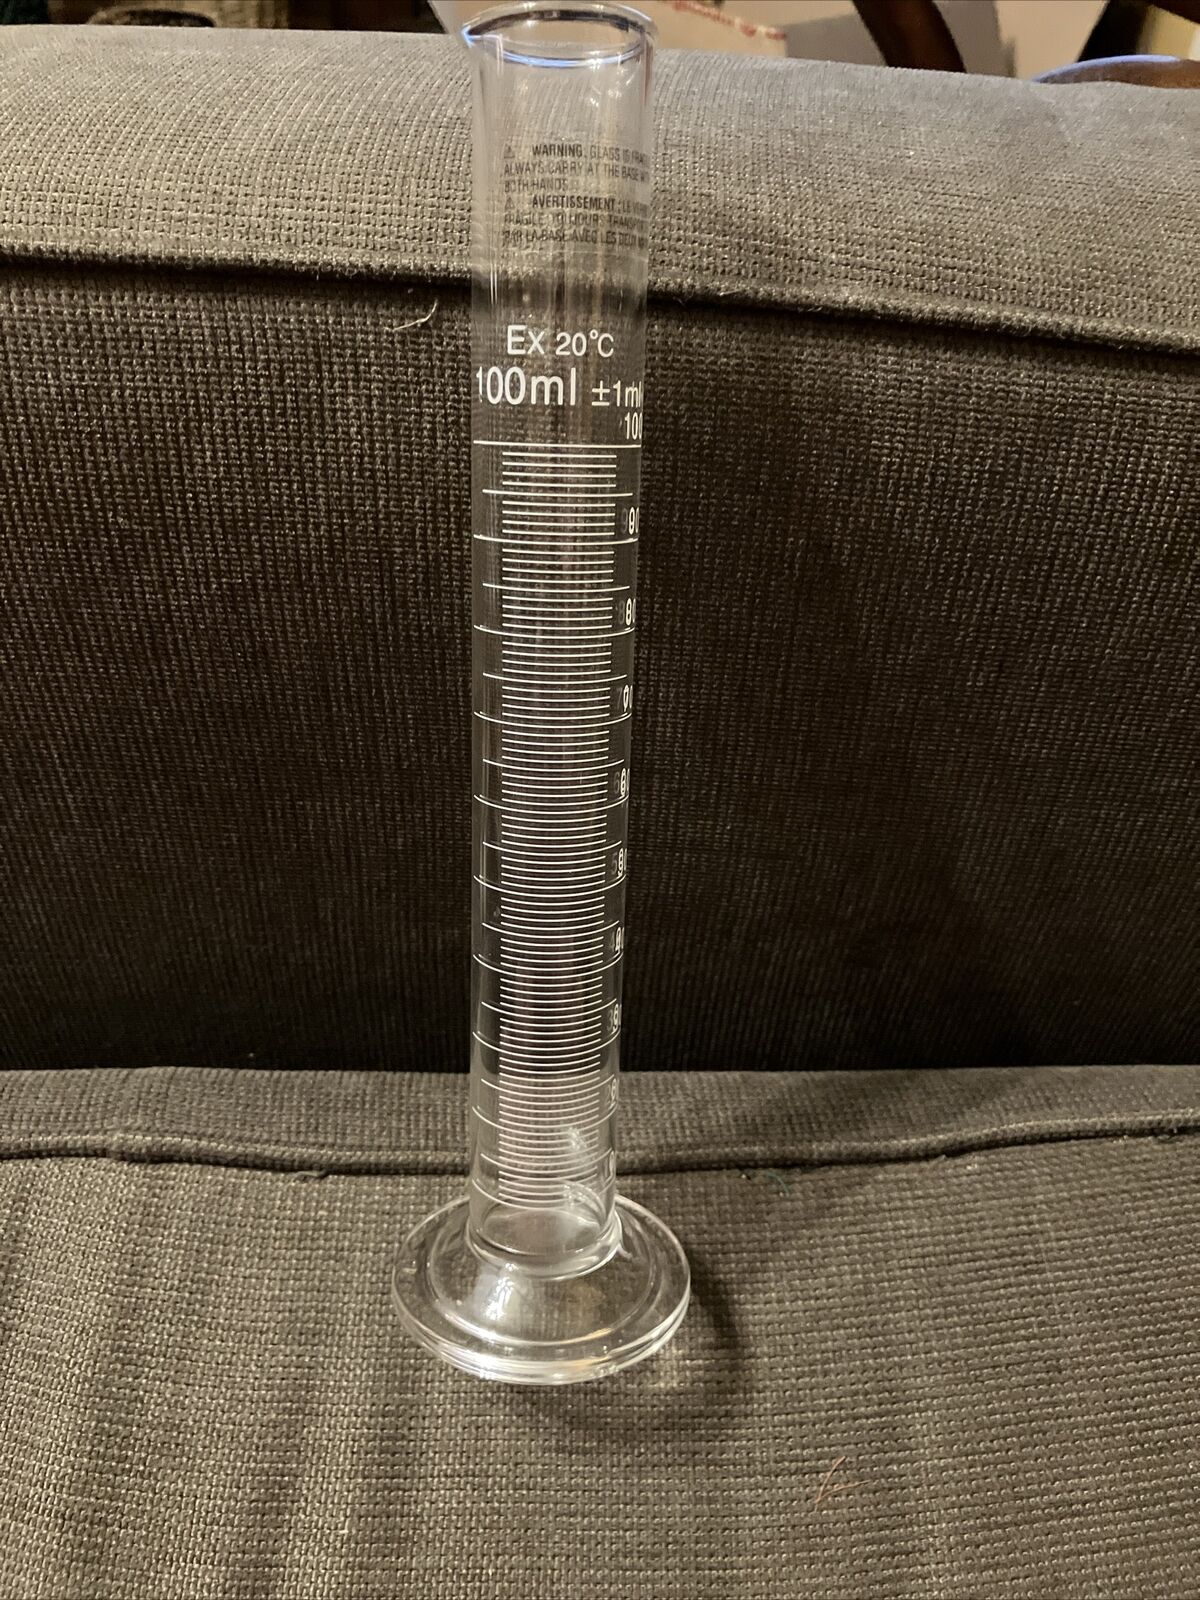 100mL Standard Glass Graduated Cylinder, Ex 20 C, 10” Tall